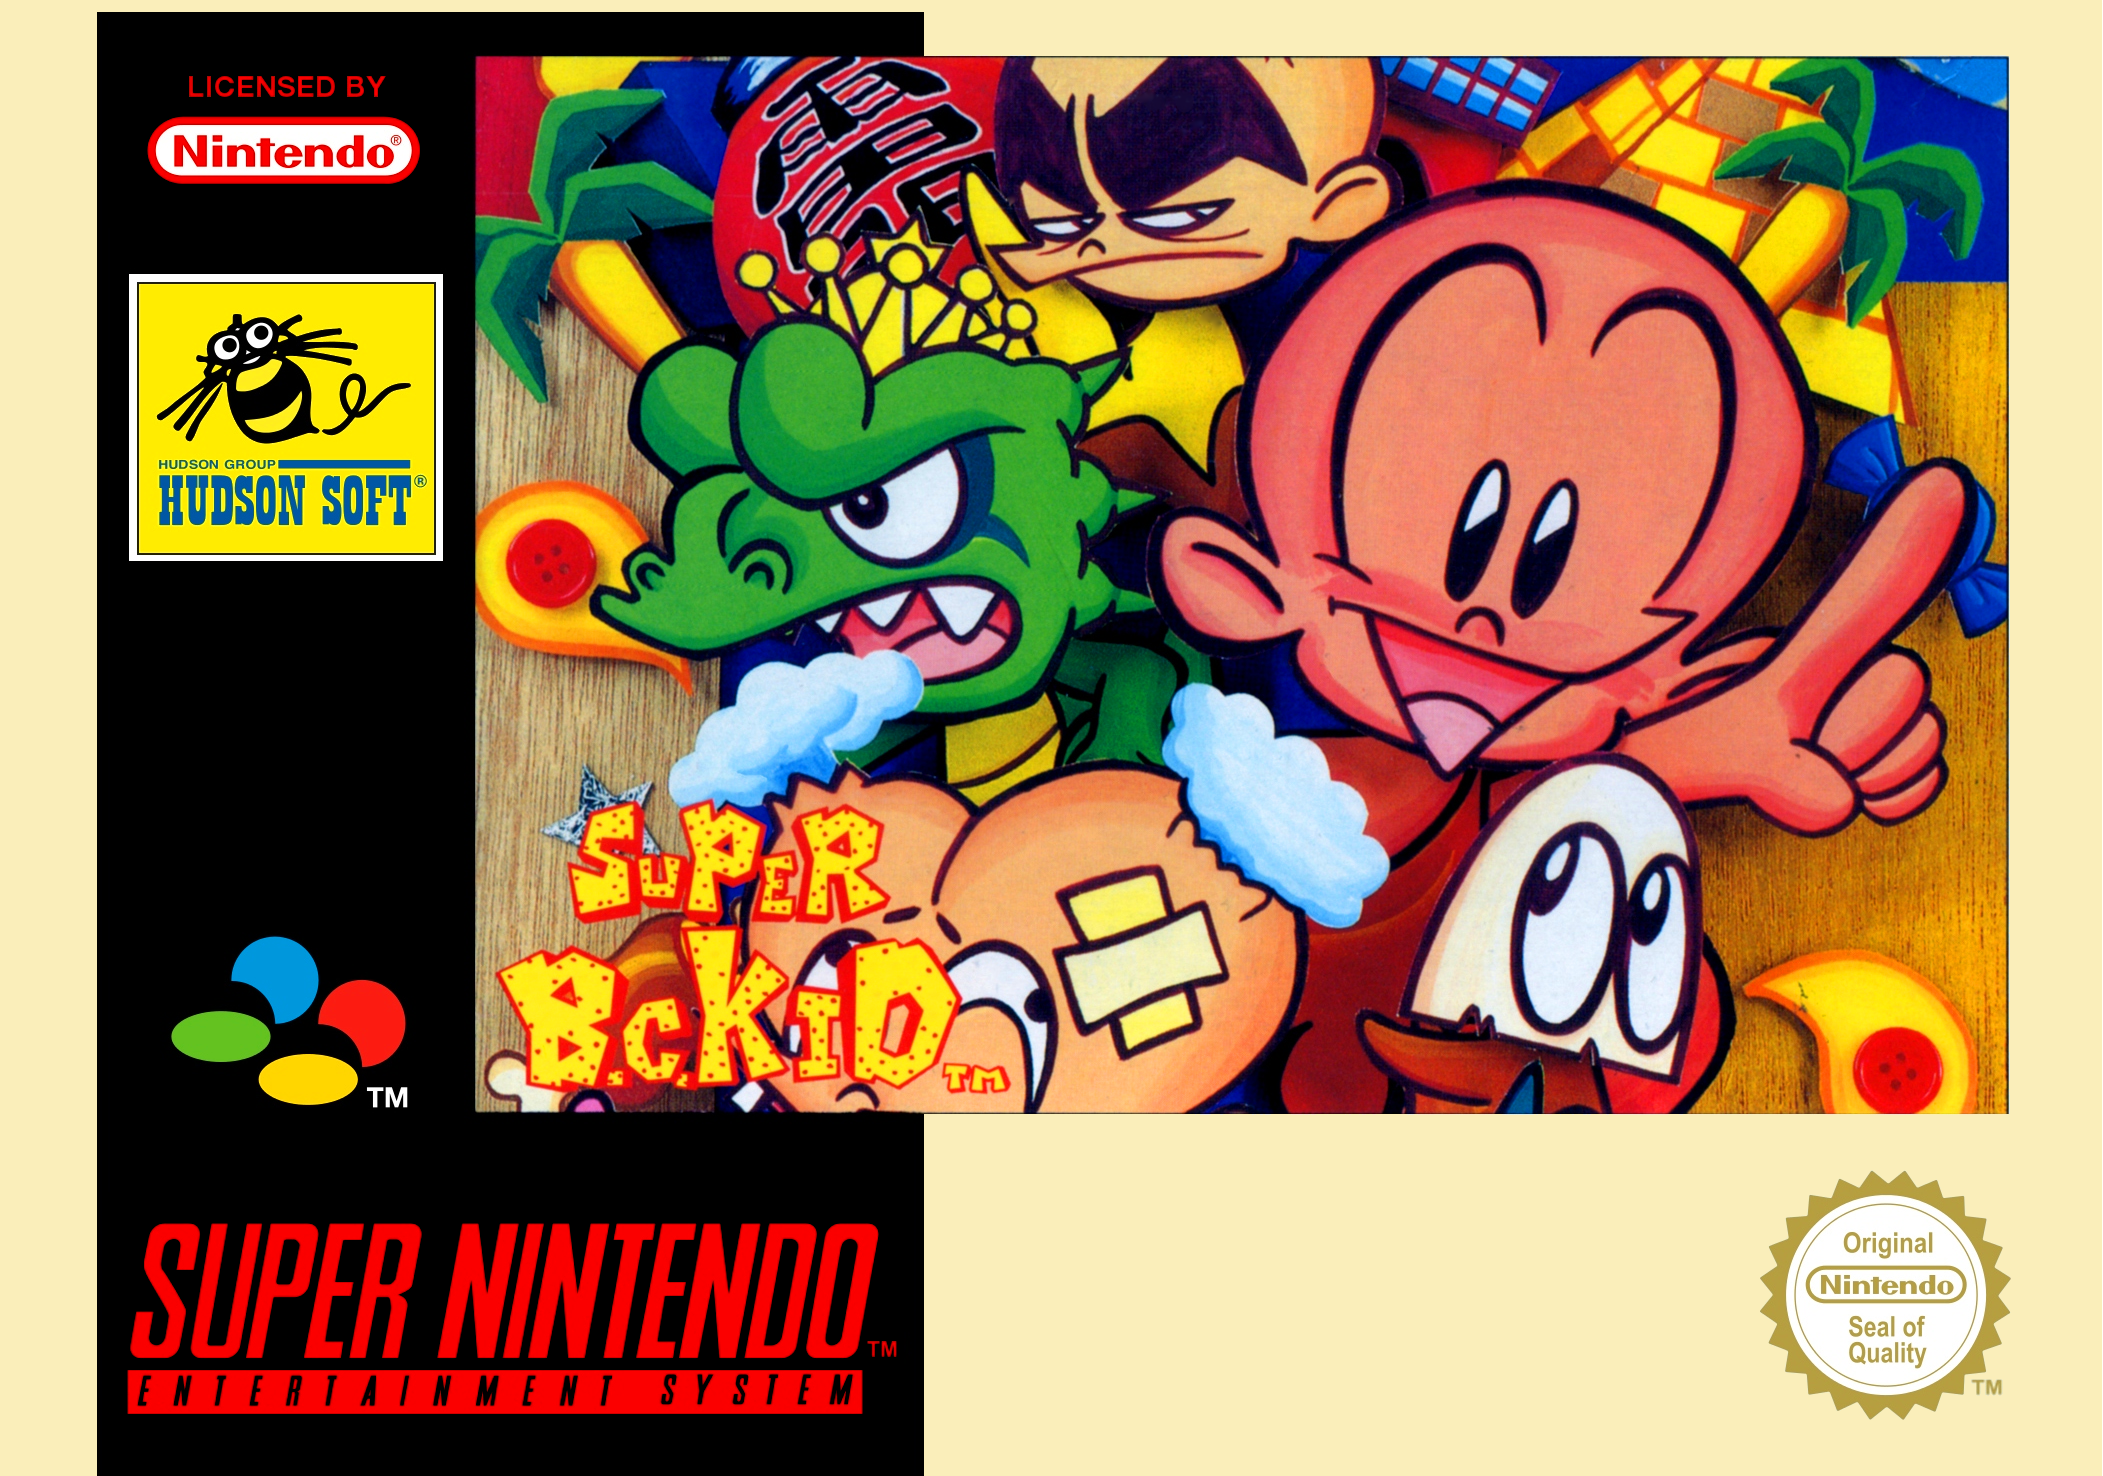 Game | Super Nintendo SNES | Super B.C. Kid